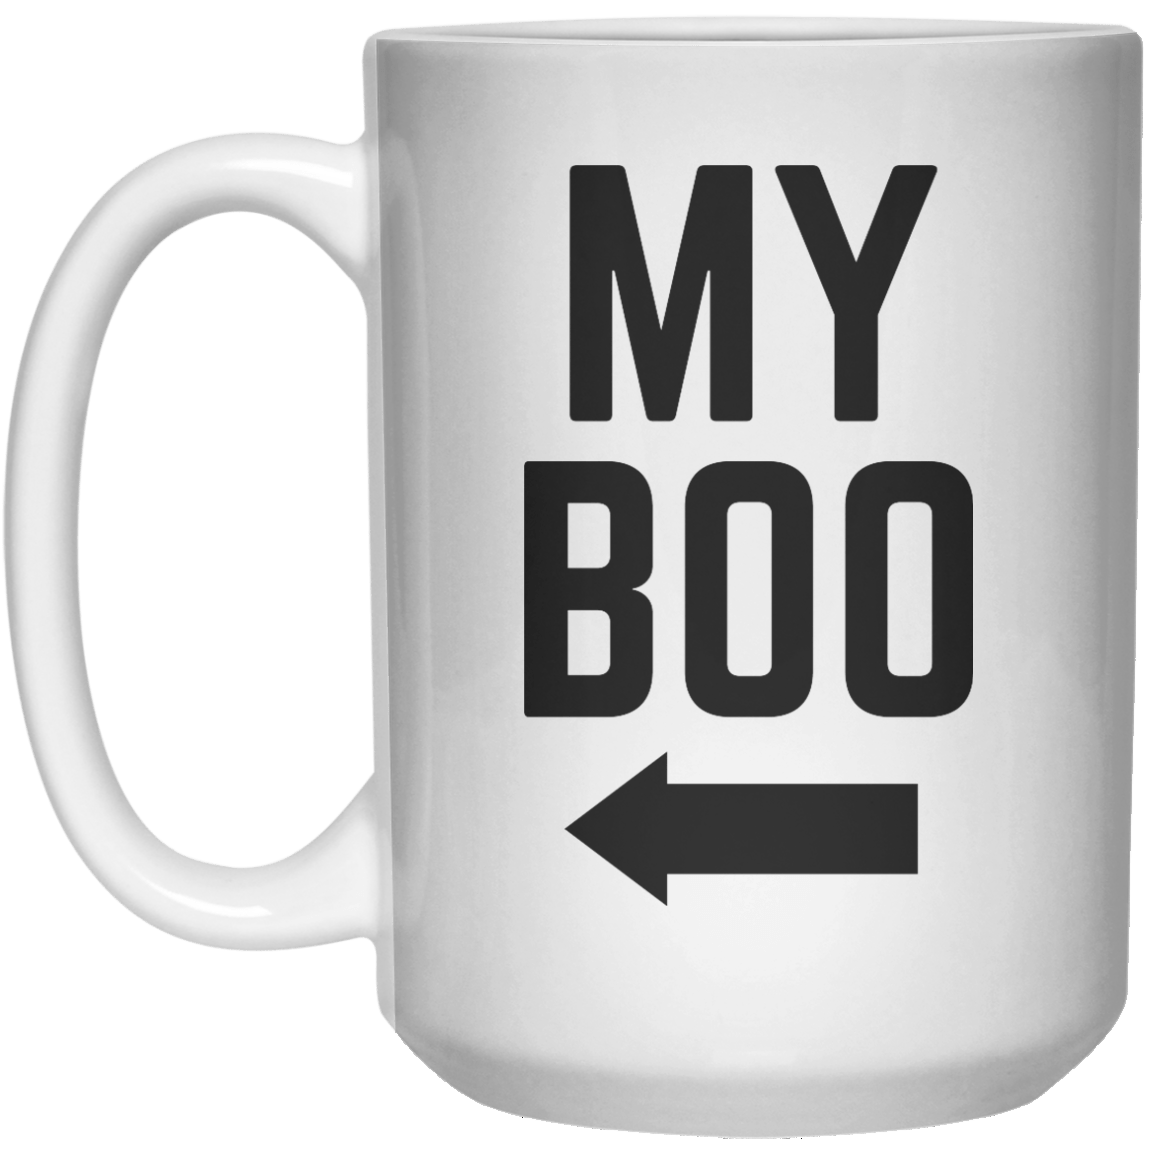 My Boo MUG  Mug - 15oz - Shirtoopia